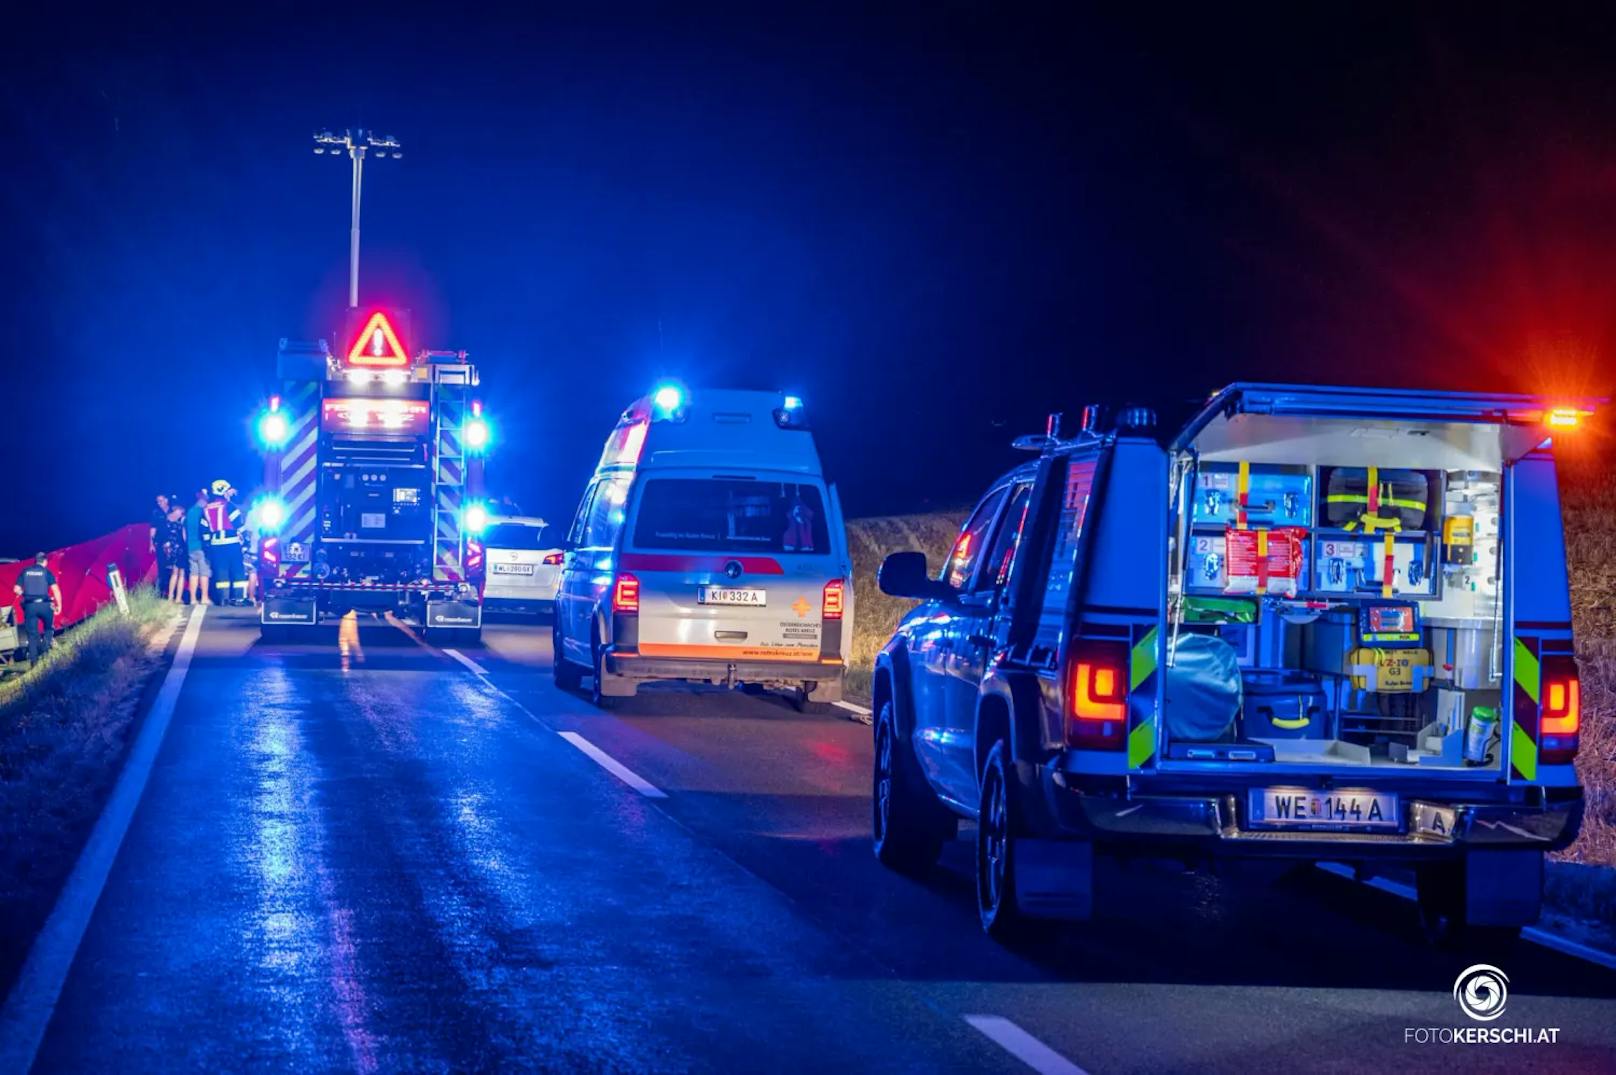 Im Bezirk Kirchdorf ist es am Wochenende zu einem schweren Verkehrsunfall gekommen. Ein Autofahrer kollidierte mit einem Moped, auf dem zwei Personen saßen. Nach dem Zusammenstoß machte sich der Lenker aus dem Staub. Die beiden Personen auf dem Moped wurden verletzt.